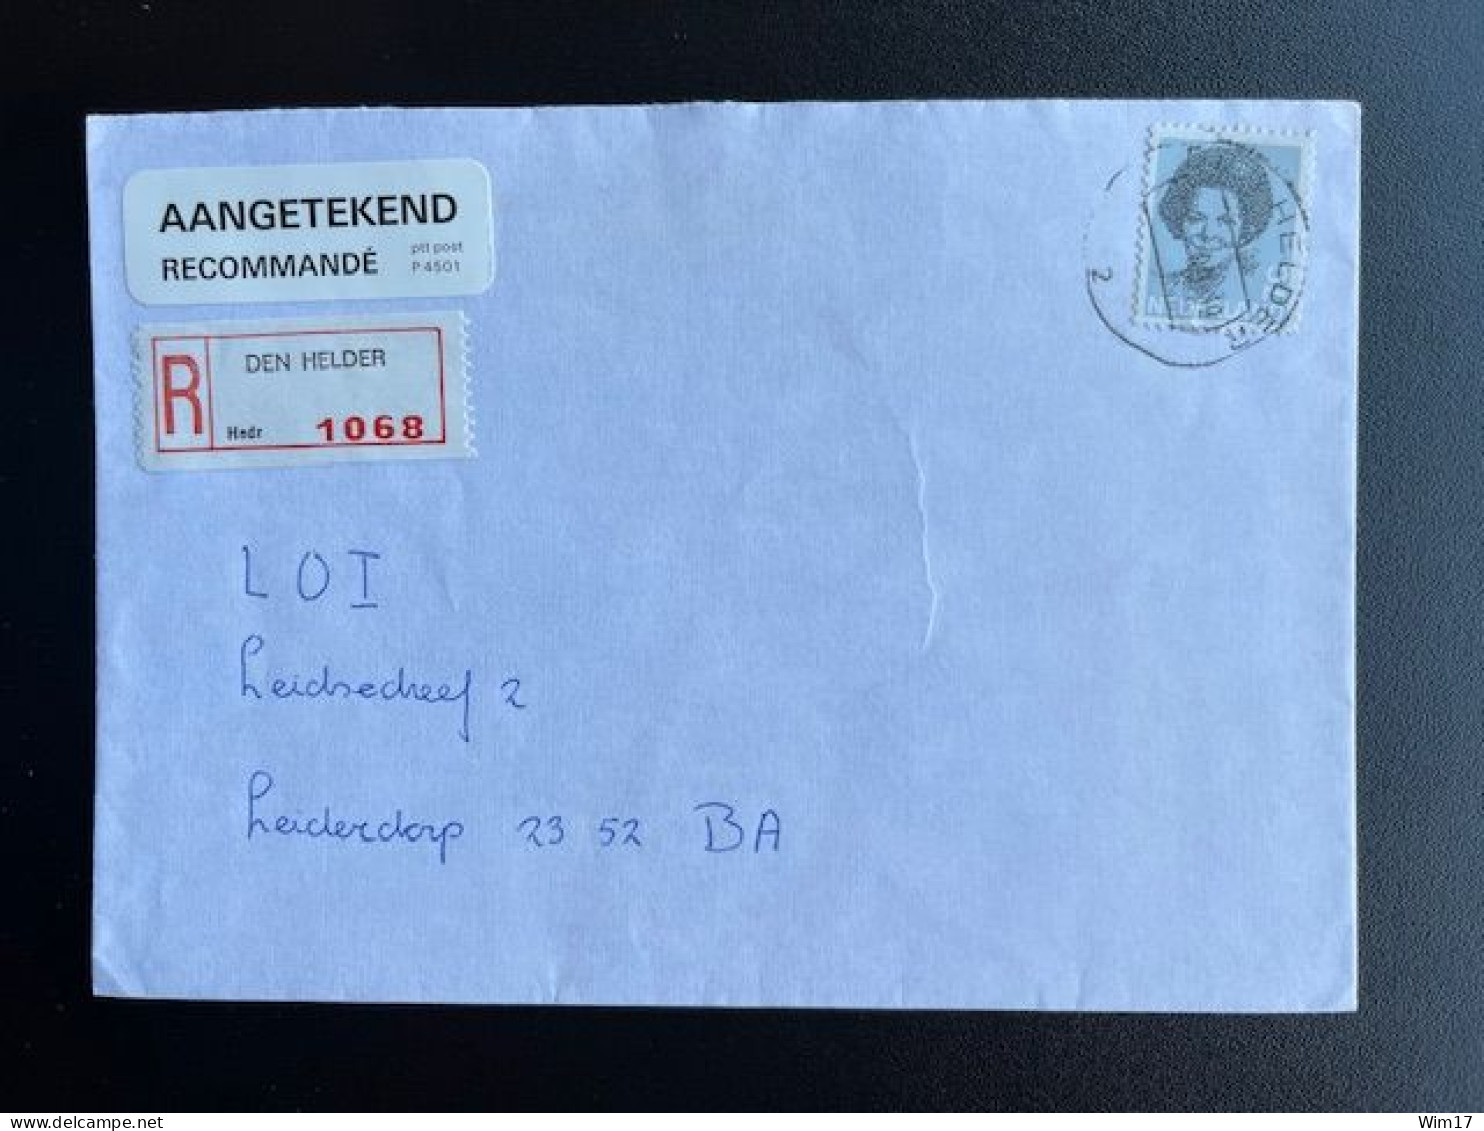 NETHERLANDS 1989 REGISTERED LETTER DEN HELDER TO LEIDERDORP NEDERLAND AANGETEKEND - Storia Postale